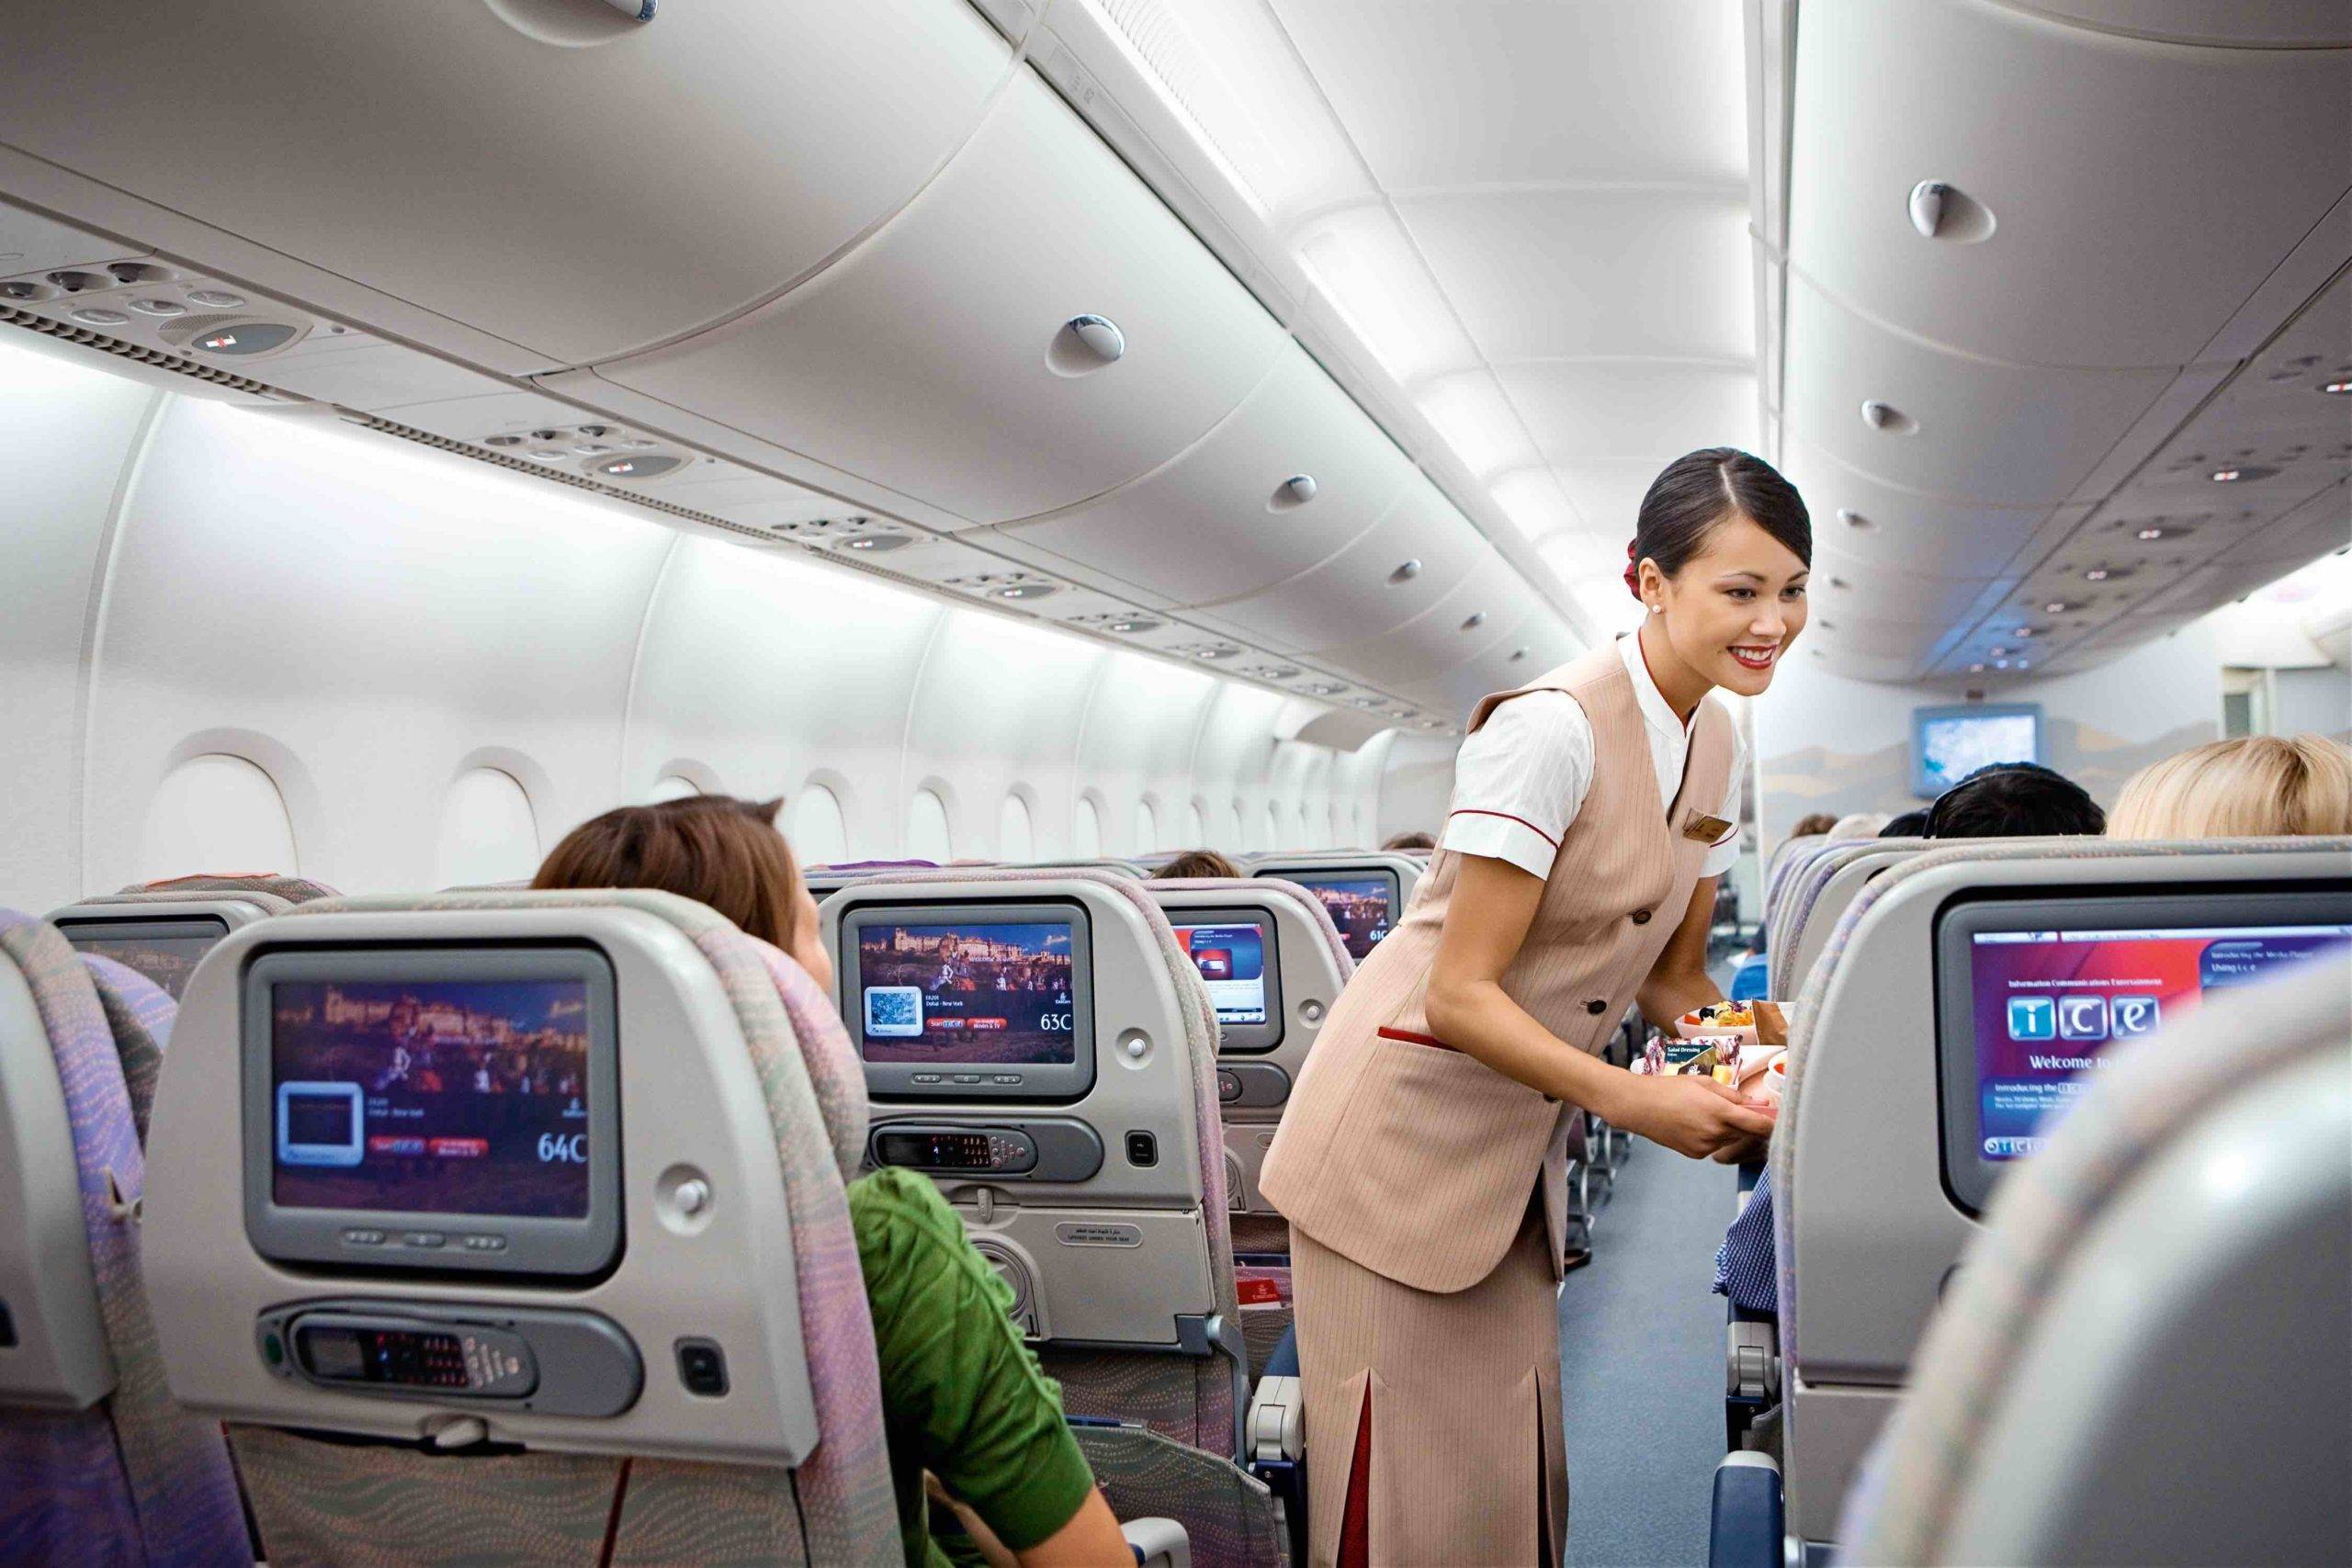 Как дешево долететь до тайланда: 7 советов